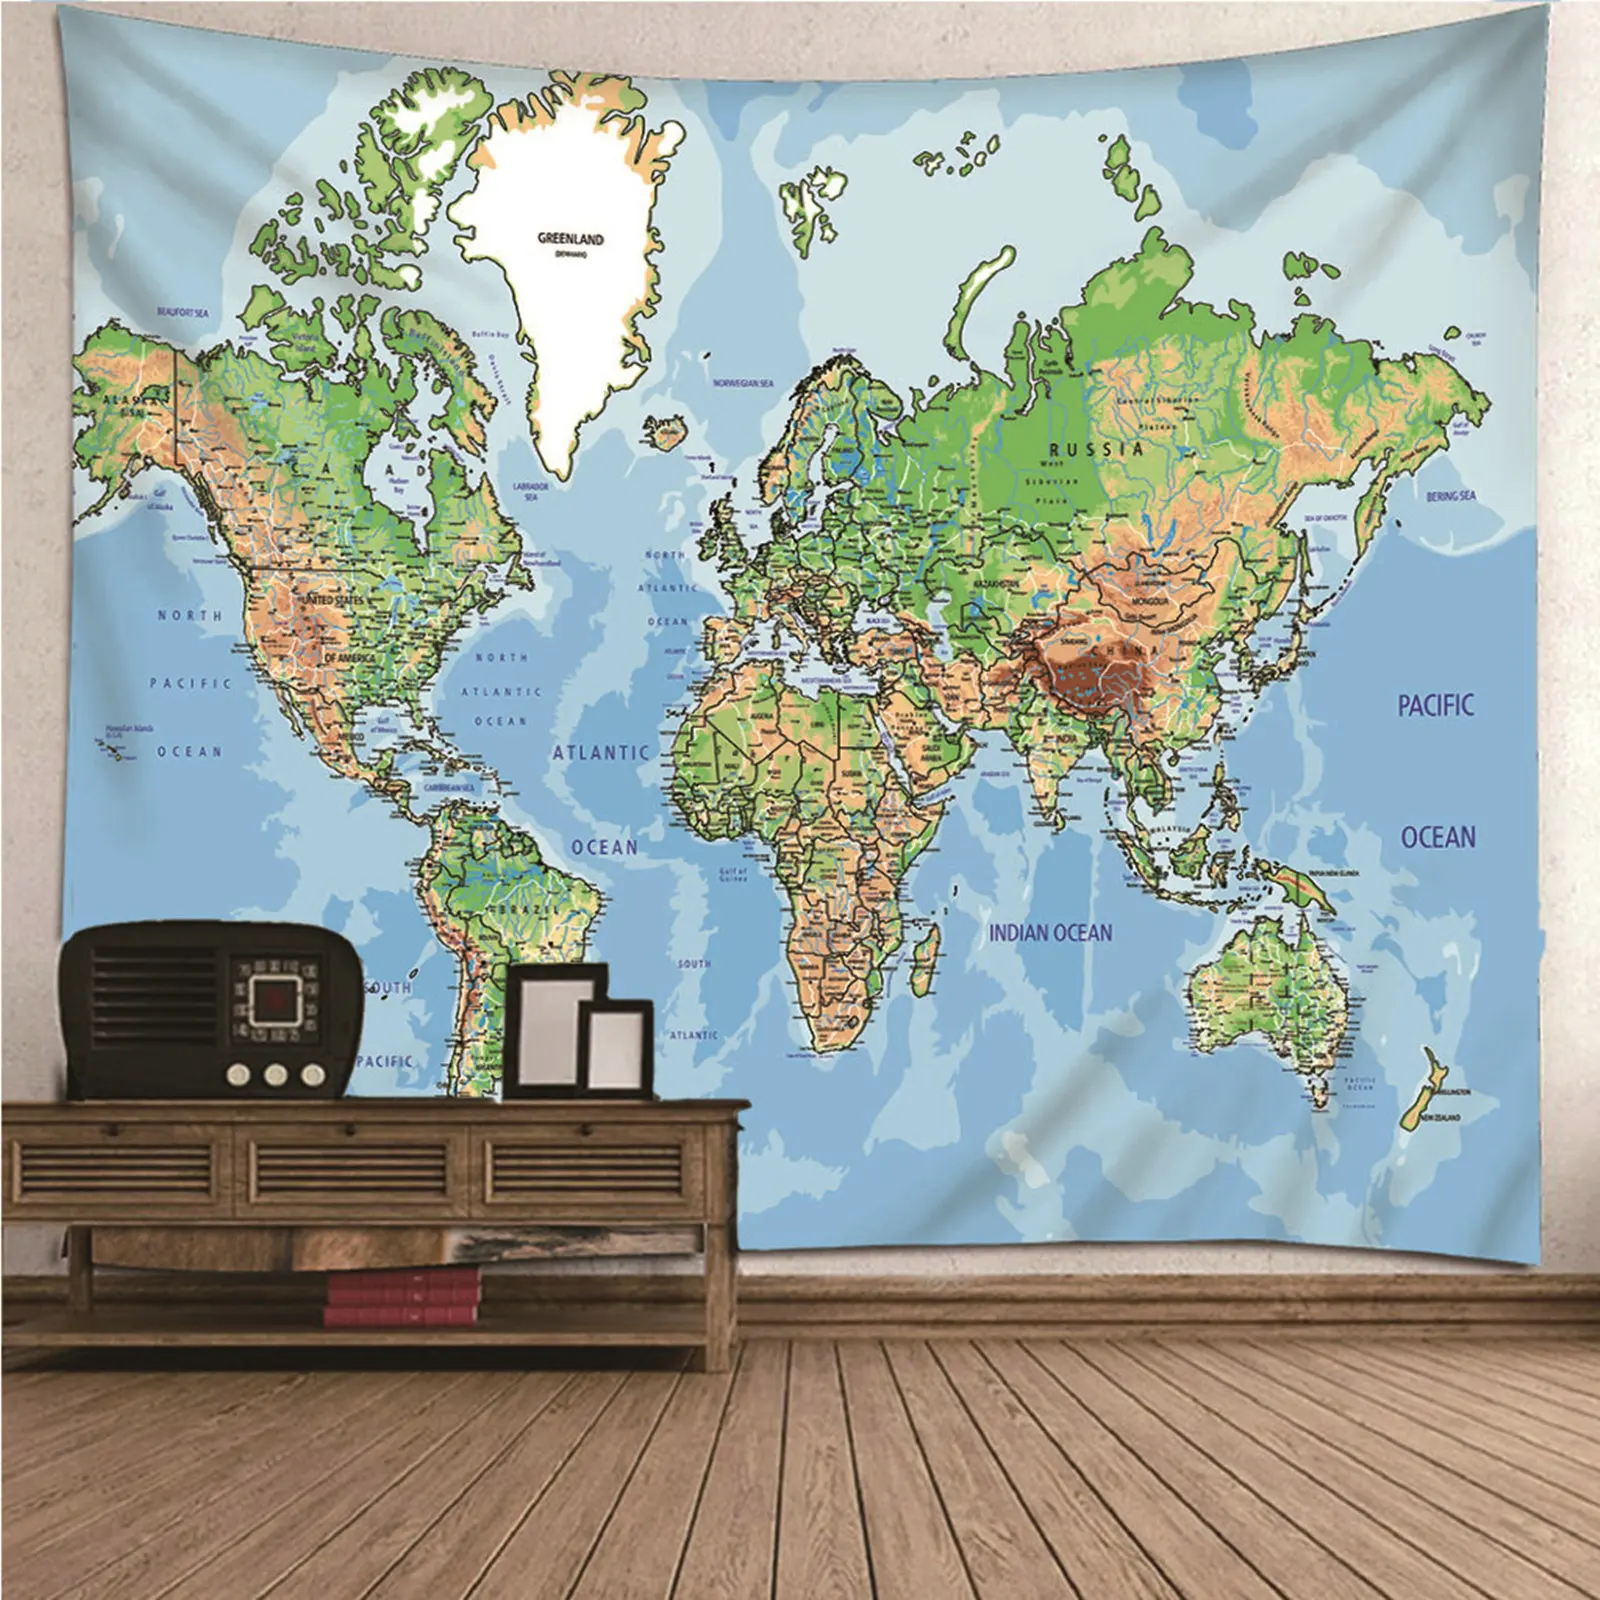 

Гобелен для мальчиков, цветной гобелен, Подростковая карта мира, настенное одеяло, Художественное покрытие для спальни